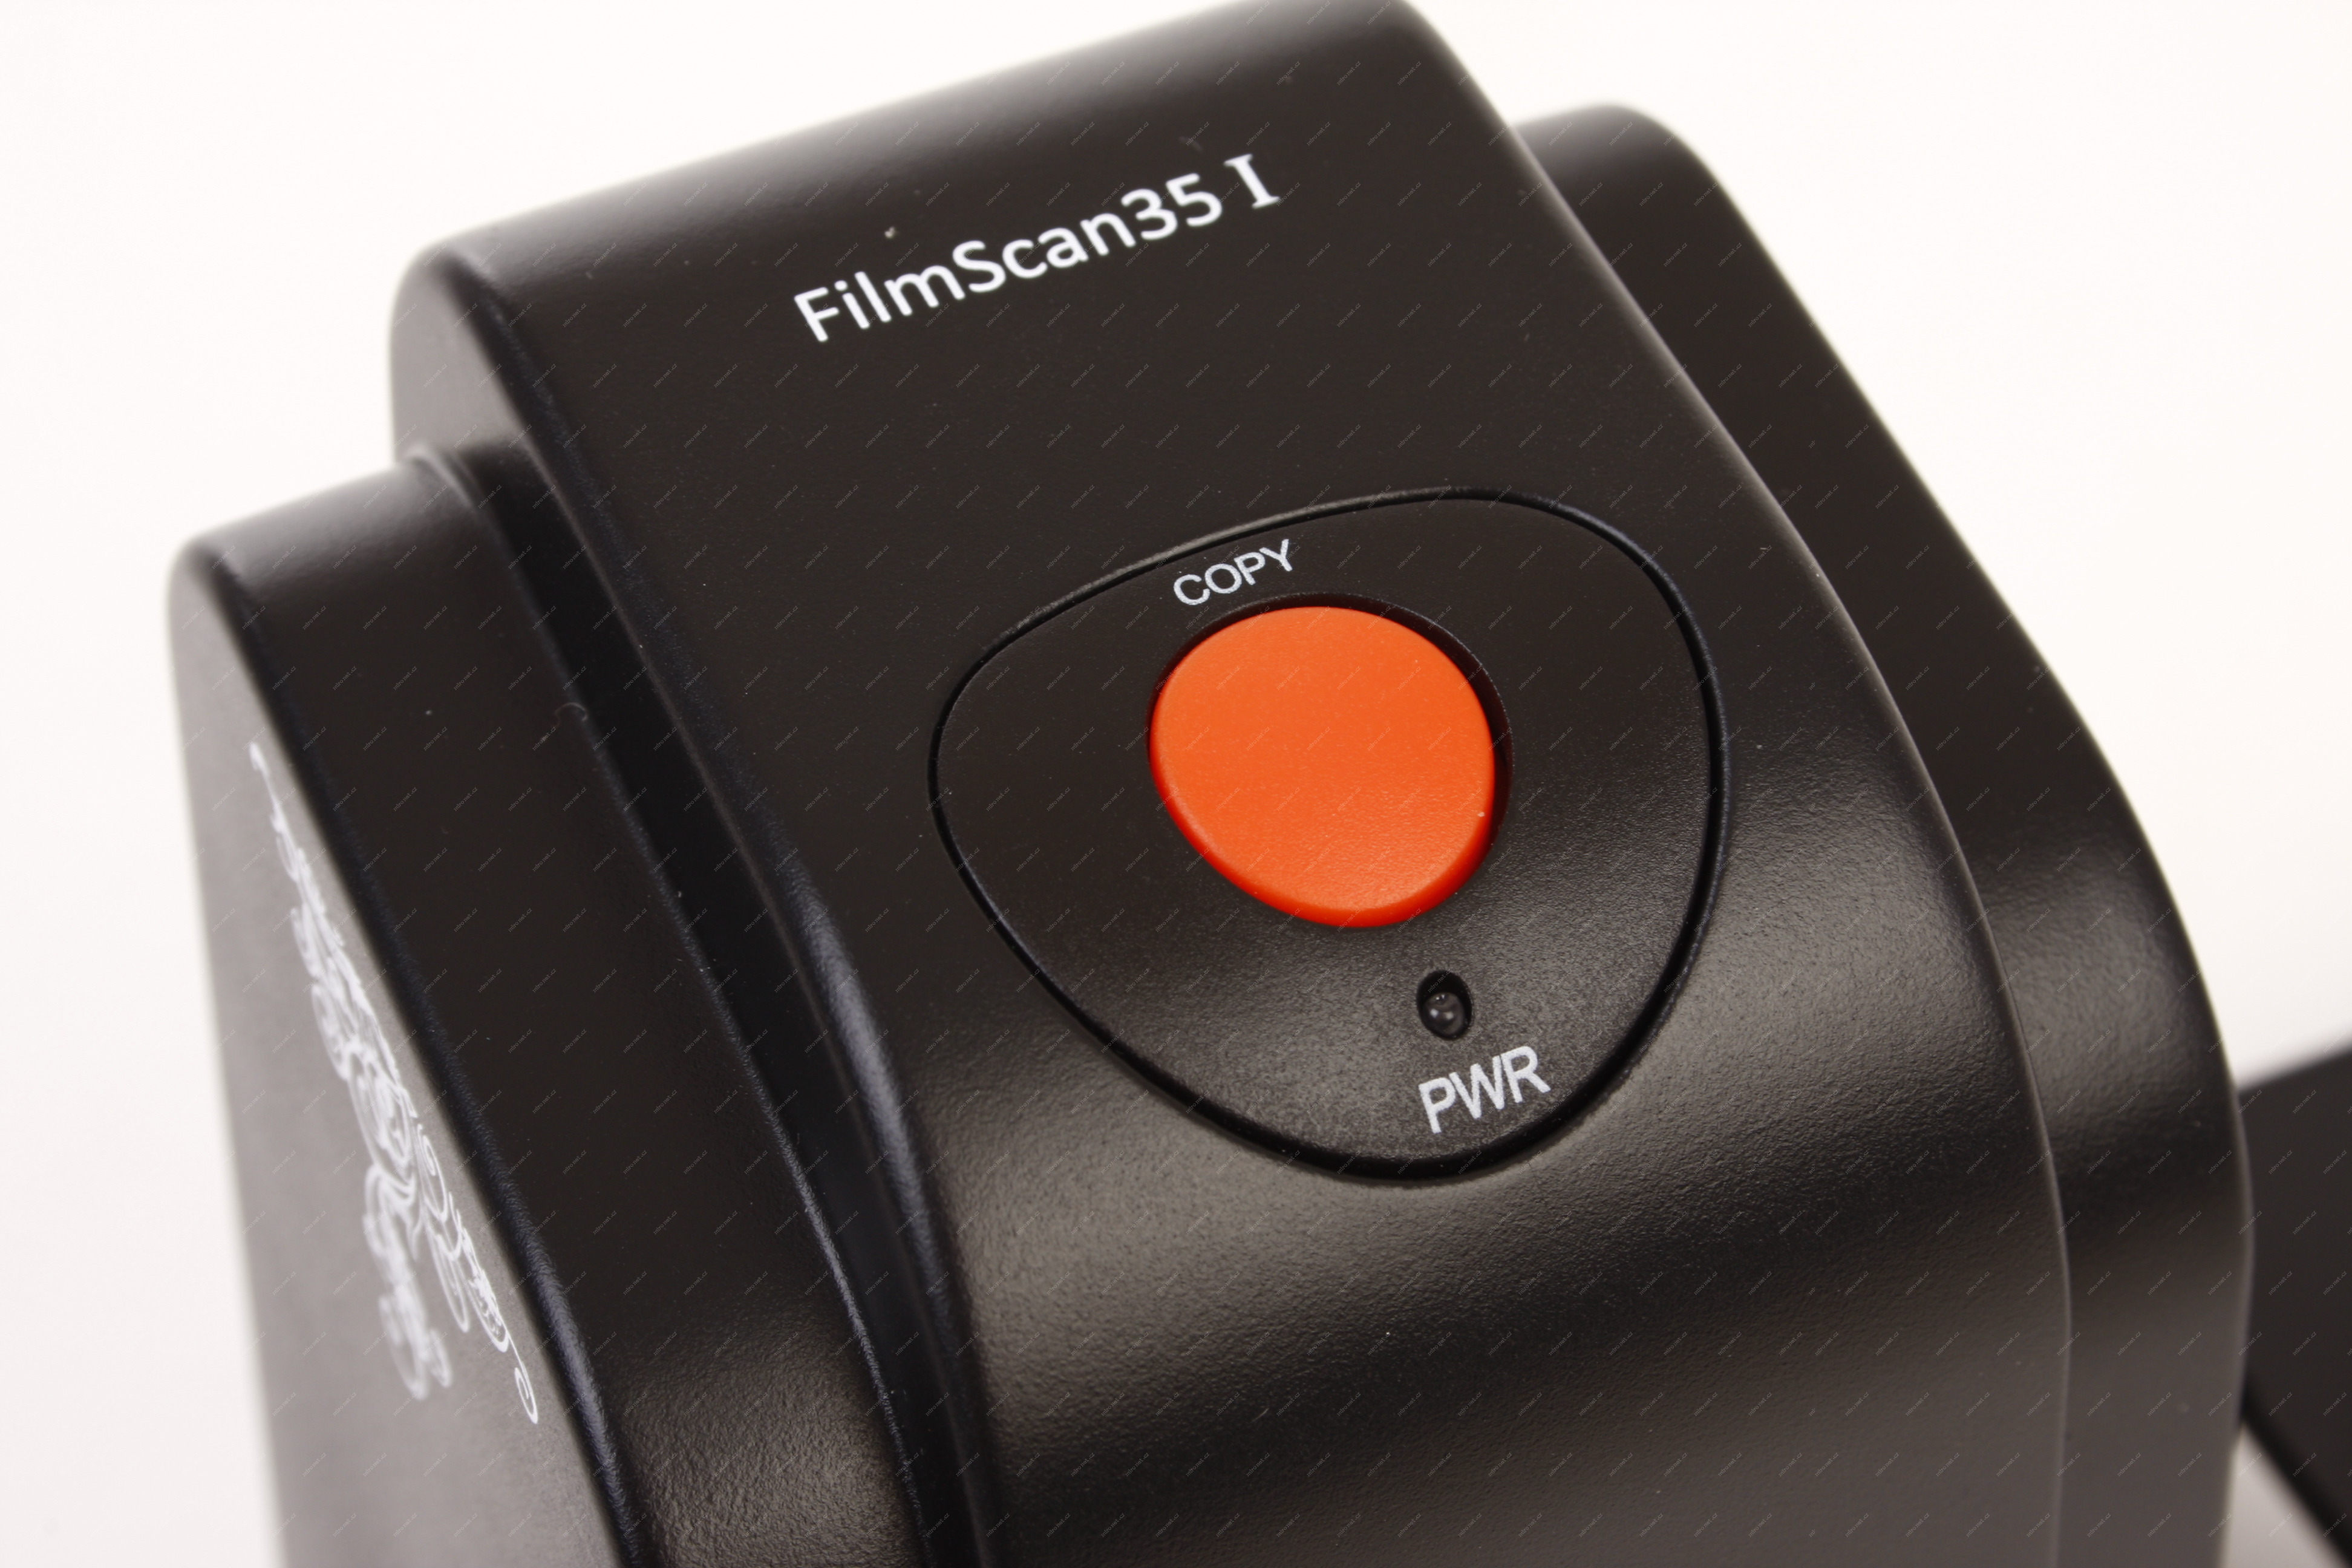 filmscan 35 i software